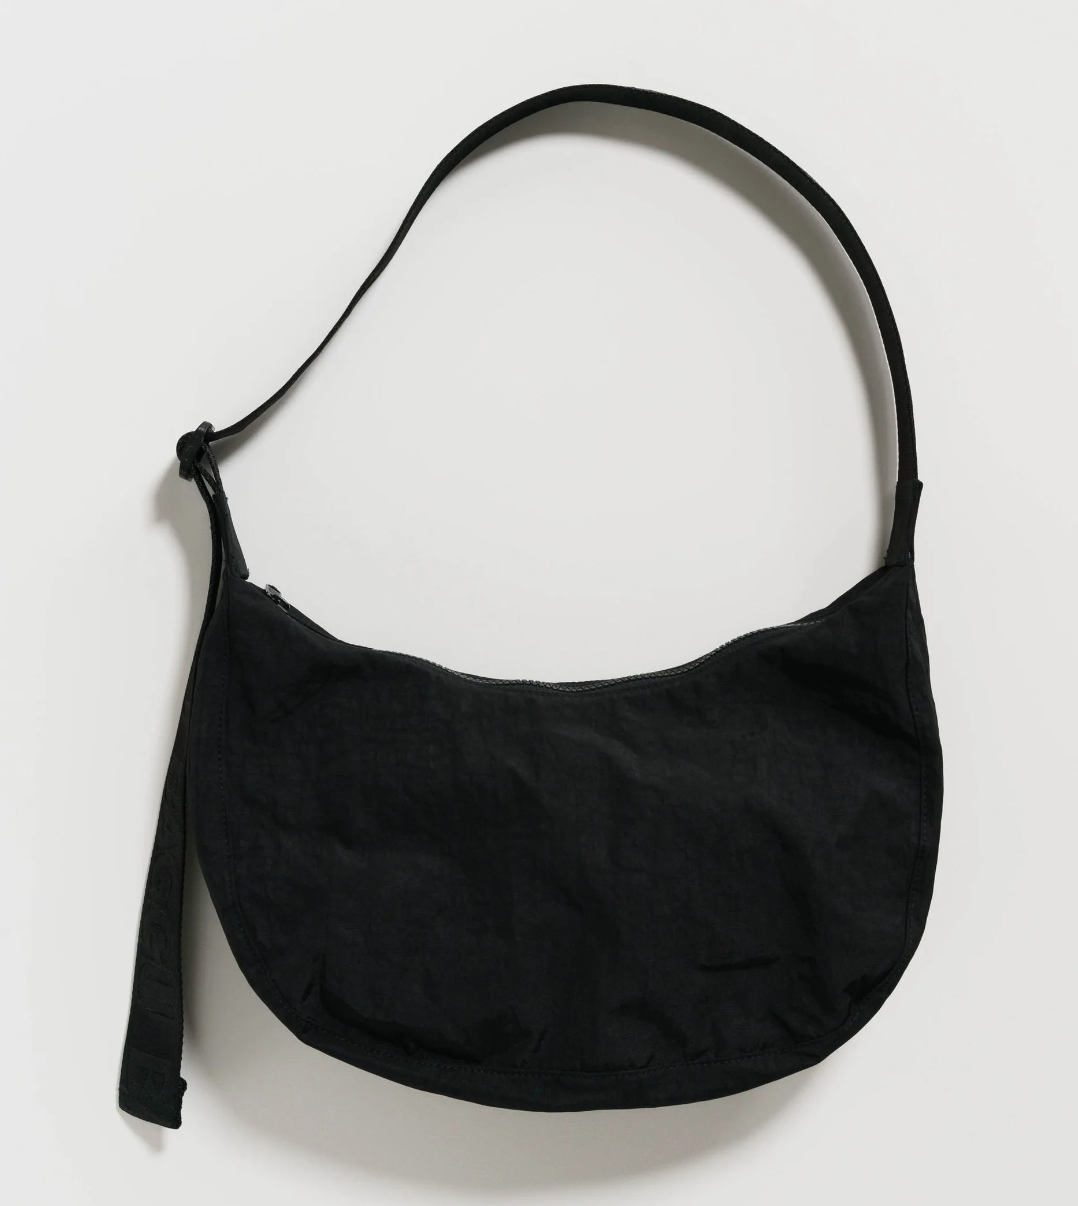 Crescent bag - Black